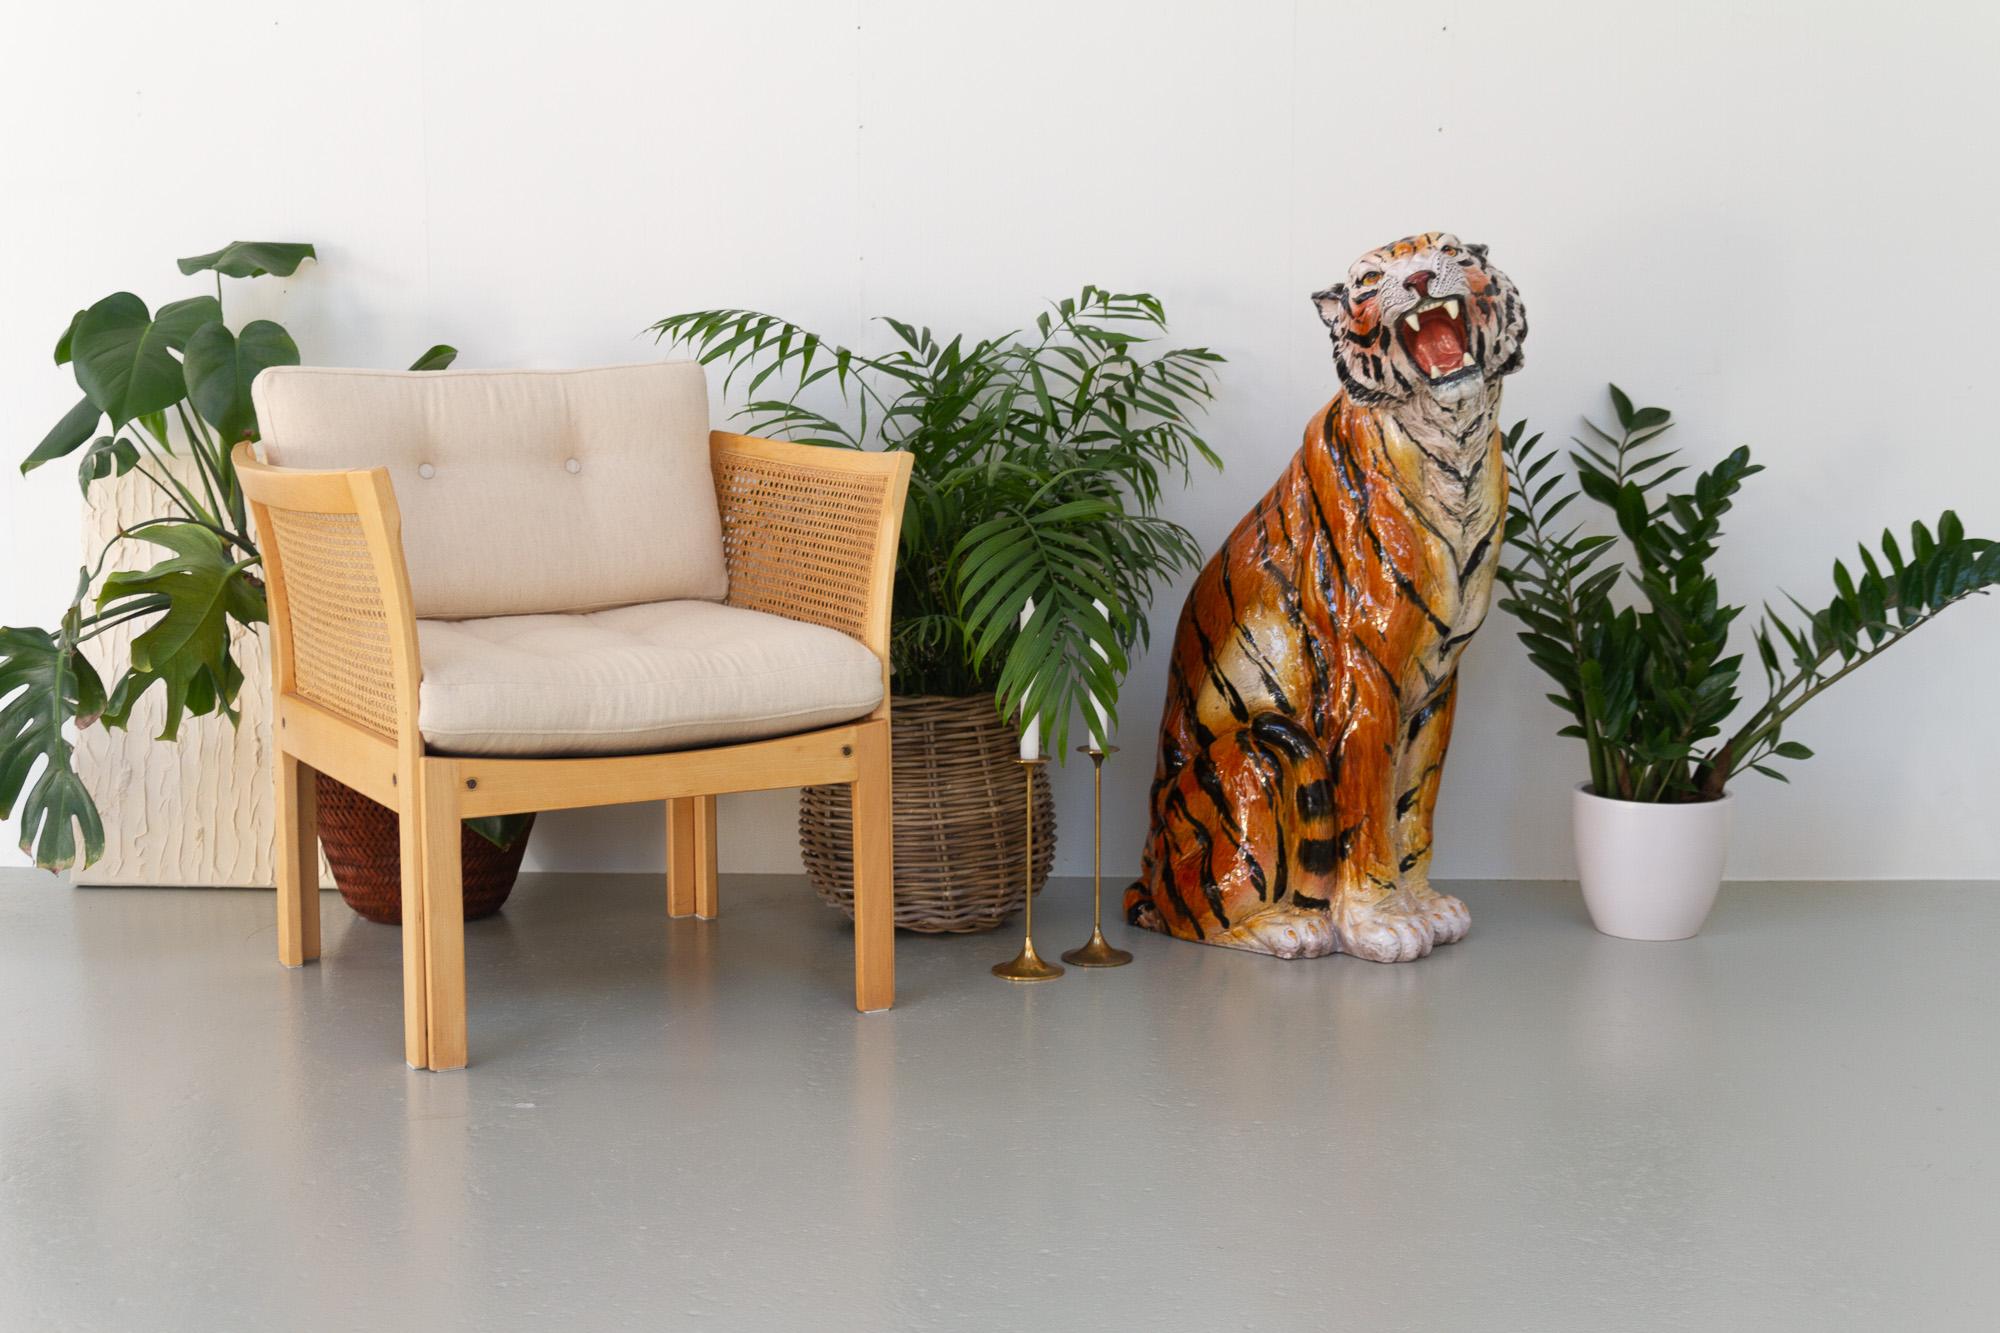 Grand tigre en céramique italien vintage, années 1970.
Une étonnante sculpture animale en céramique peinte à la main représentant un tigre assis. Statue de grand félin très réaliste et anatomiquement correcte. Fabriqué en Italie dans les années